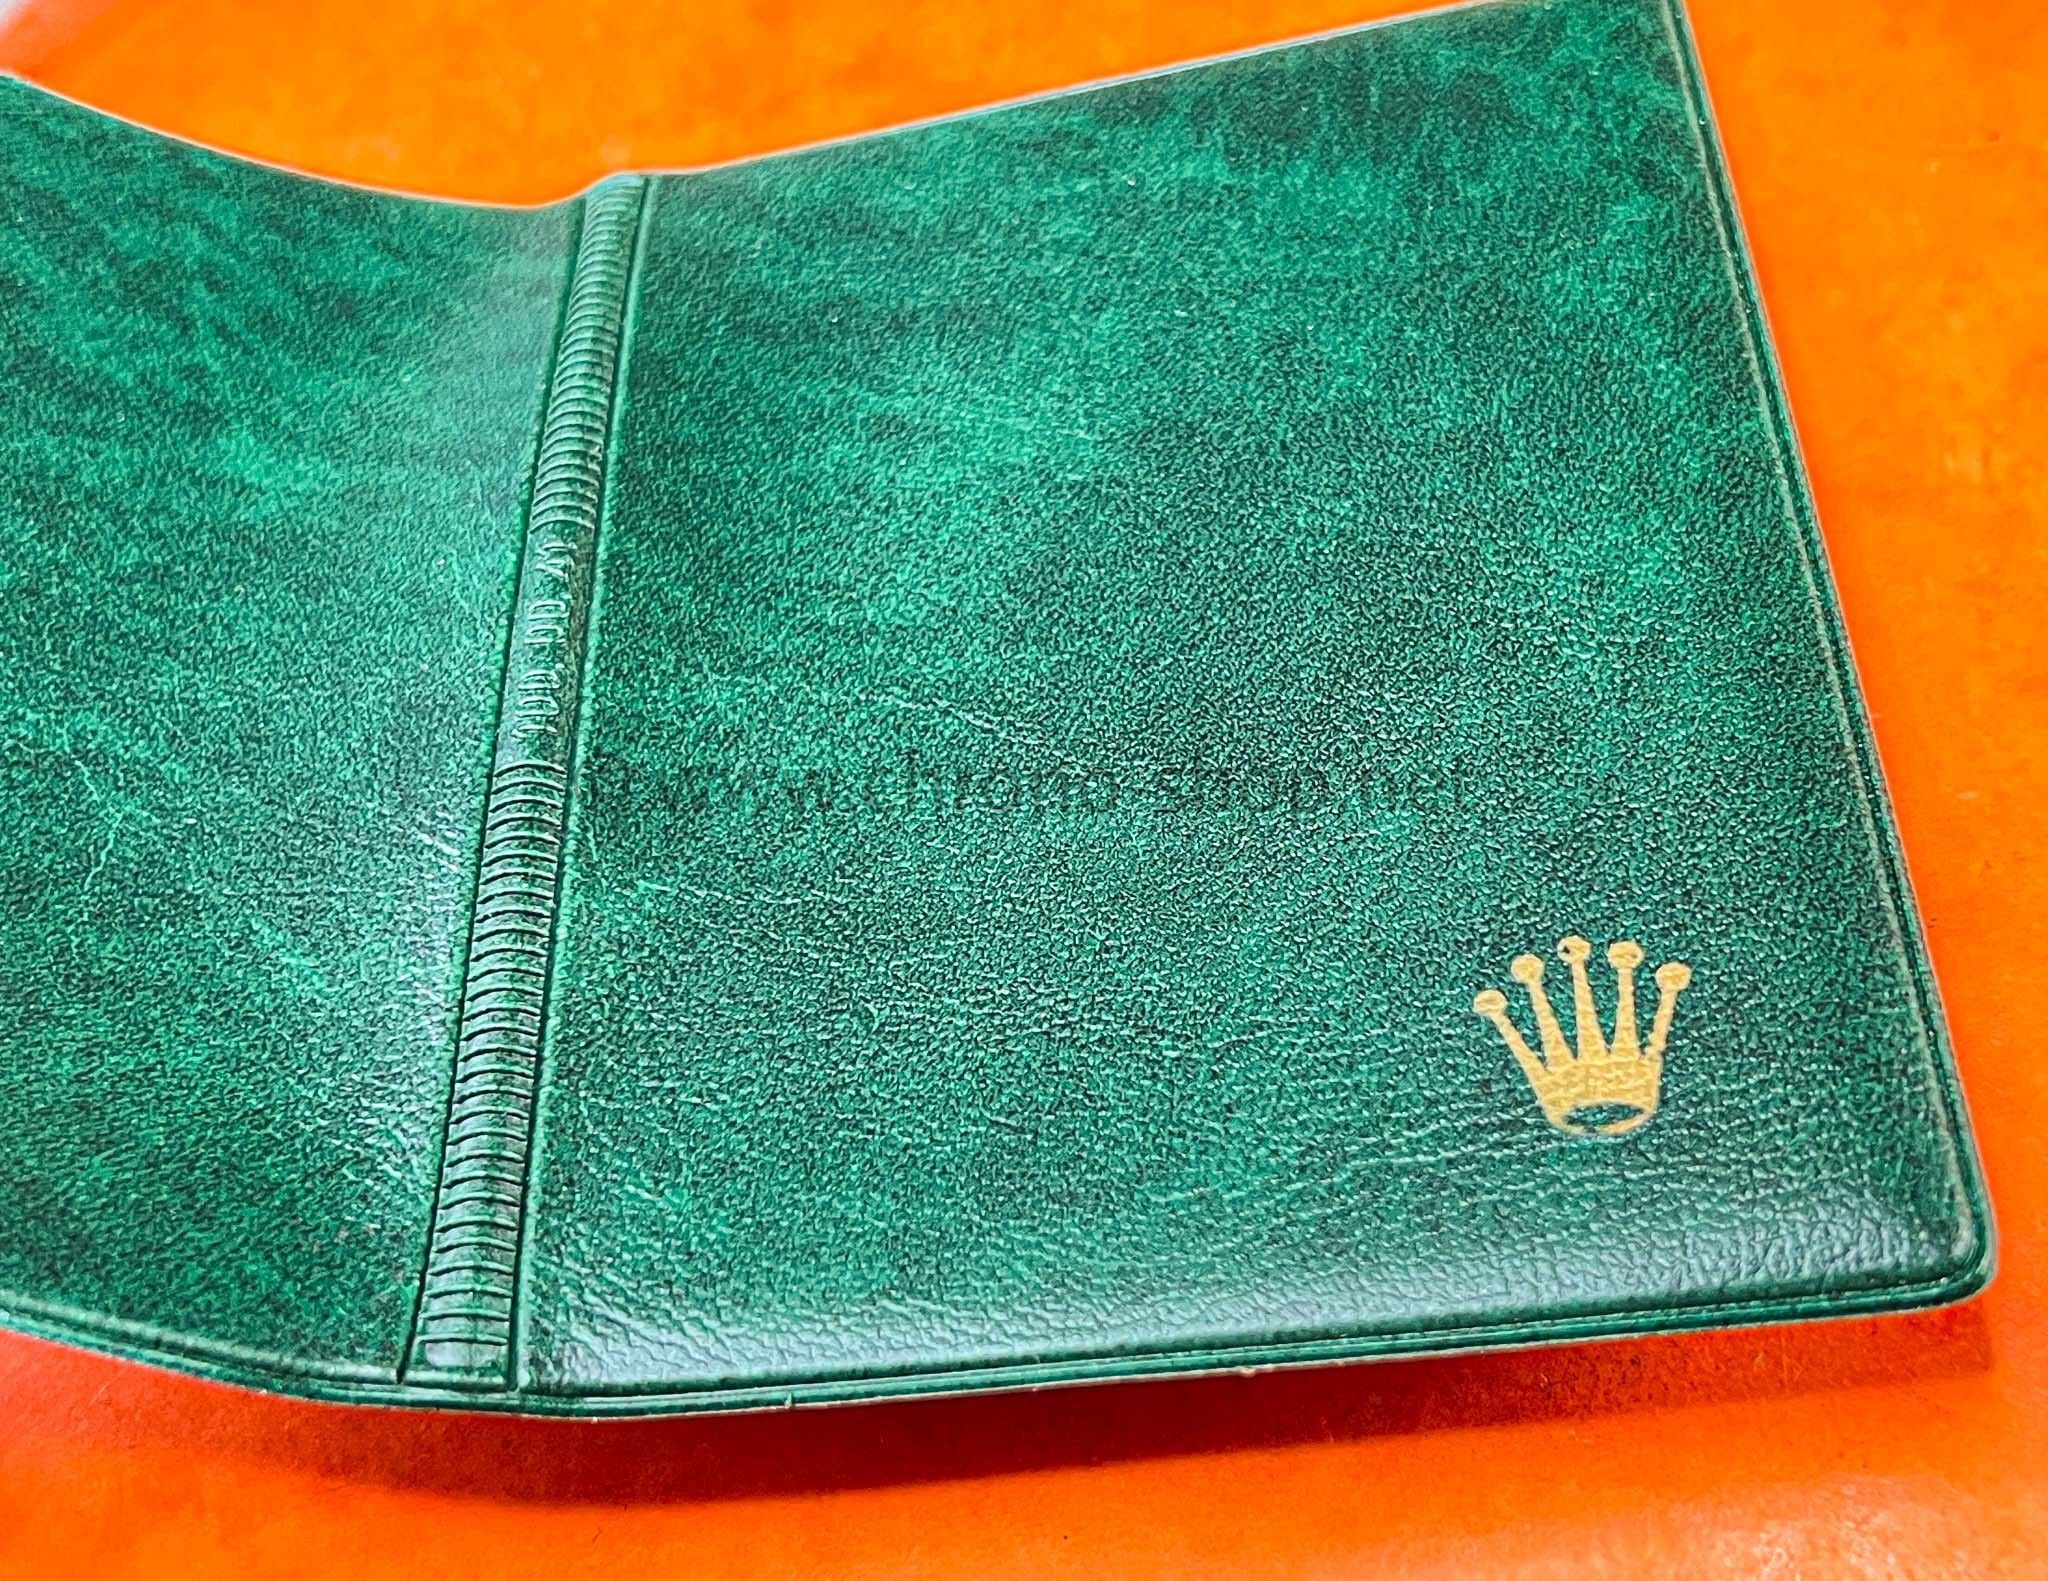 Rolex Rare Original 70's Vintage Green Grain Leather Plastic Billfold Wallet ref 100.00.41 Watches 5513,1680,1675,1016